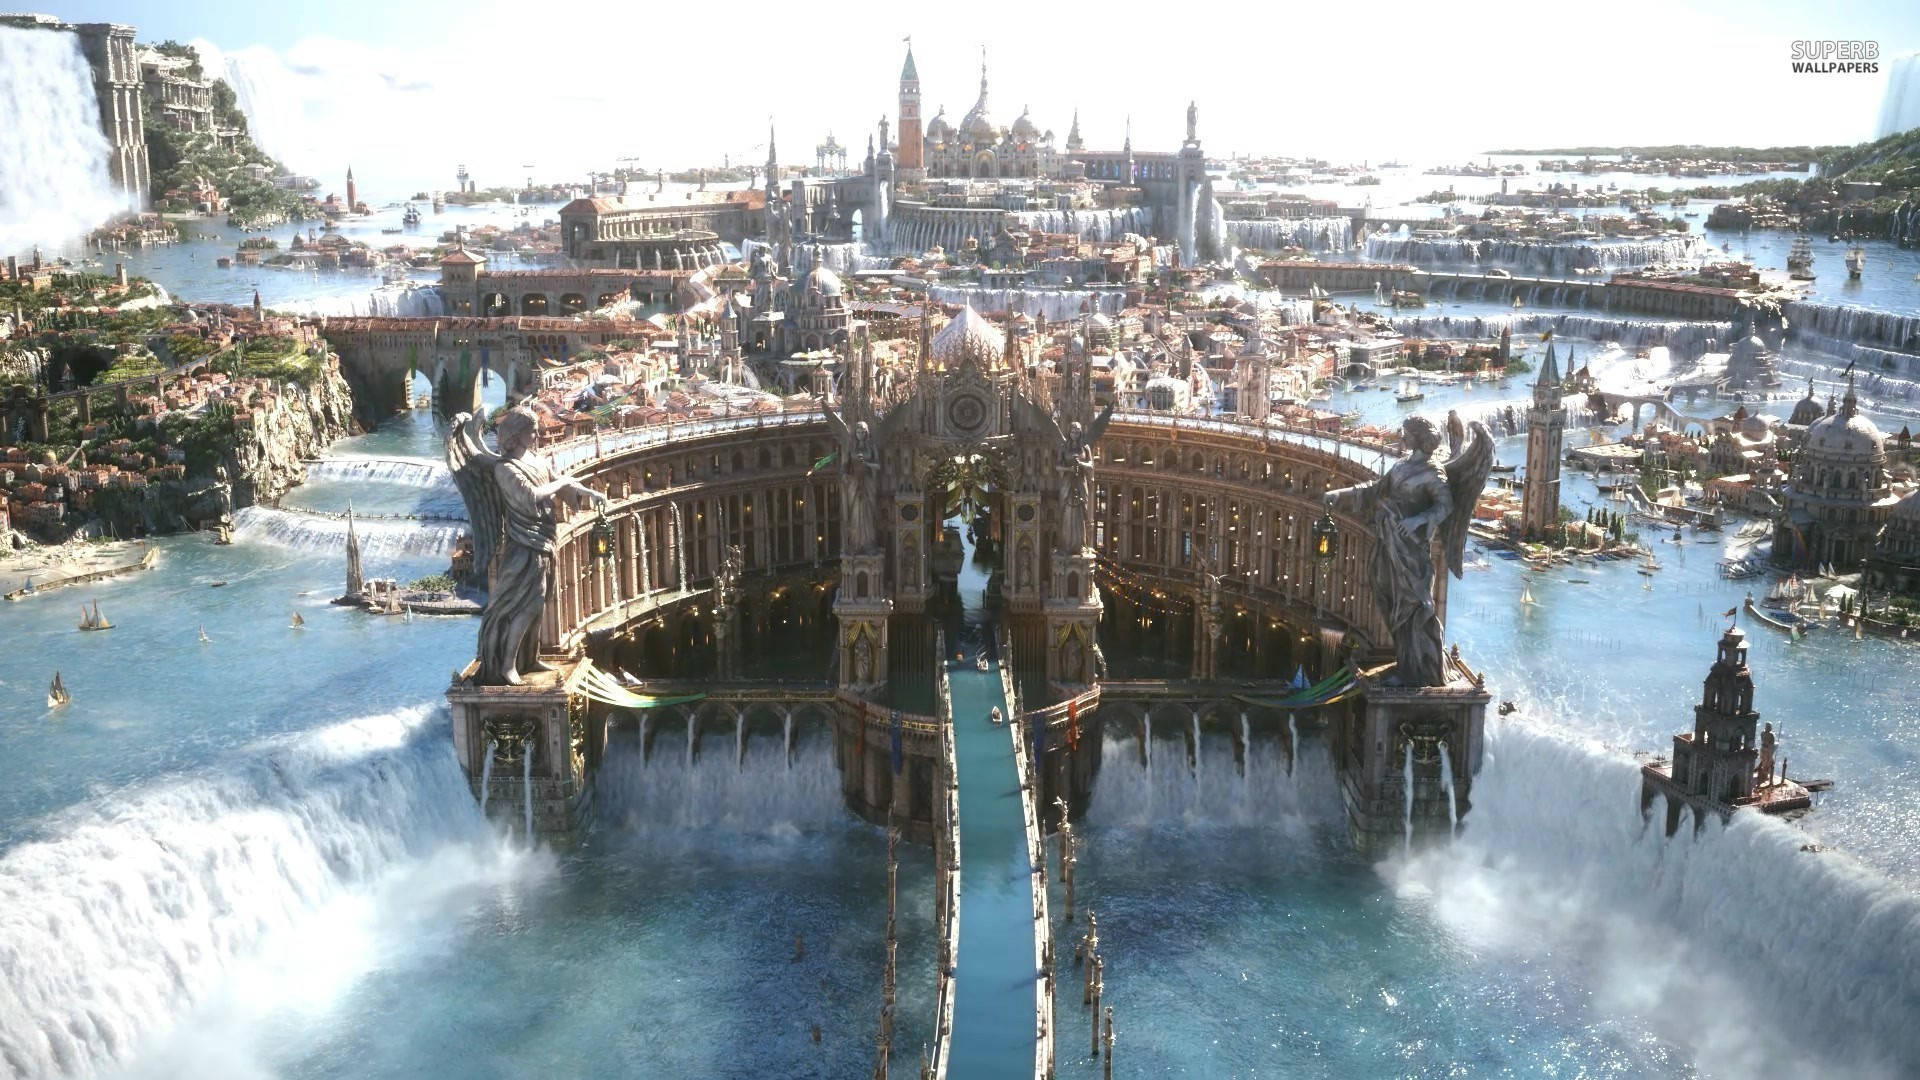 Altissia In Final Fantasy Xv